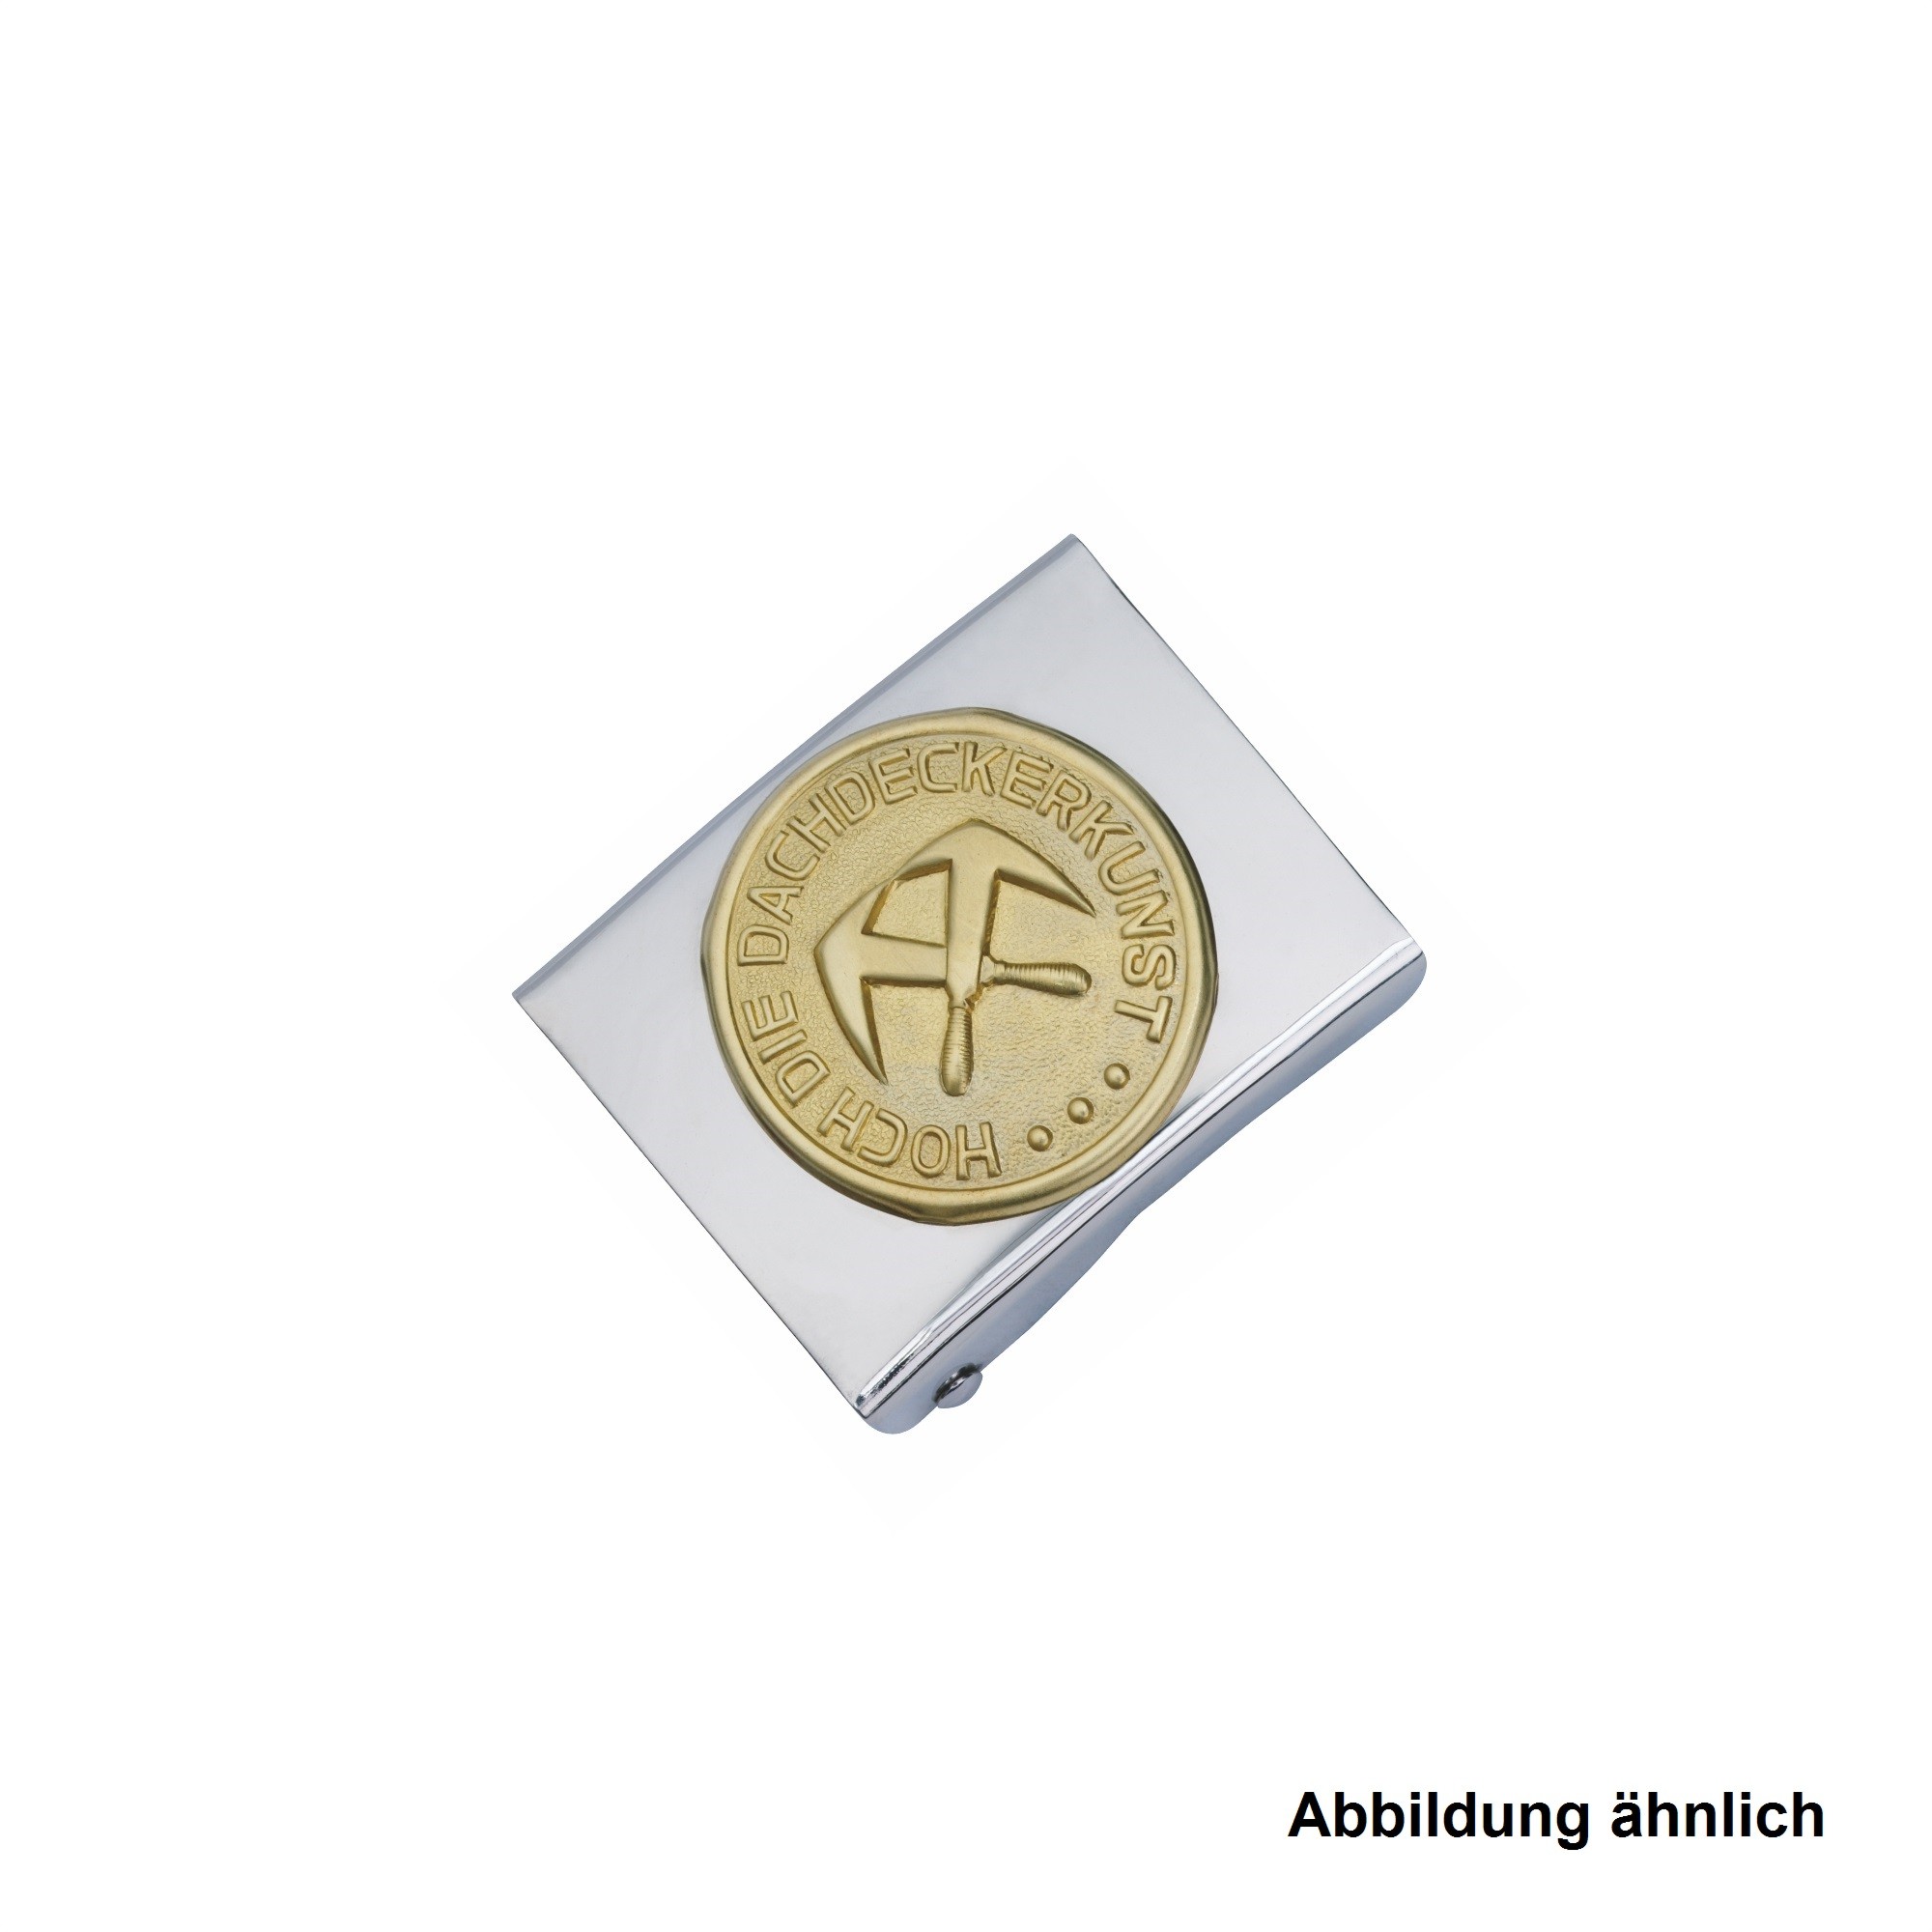 Freund Koppelschloss Zimmerer Neusilberausführung, Messing-Emblem, 45 g